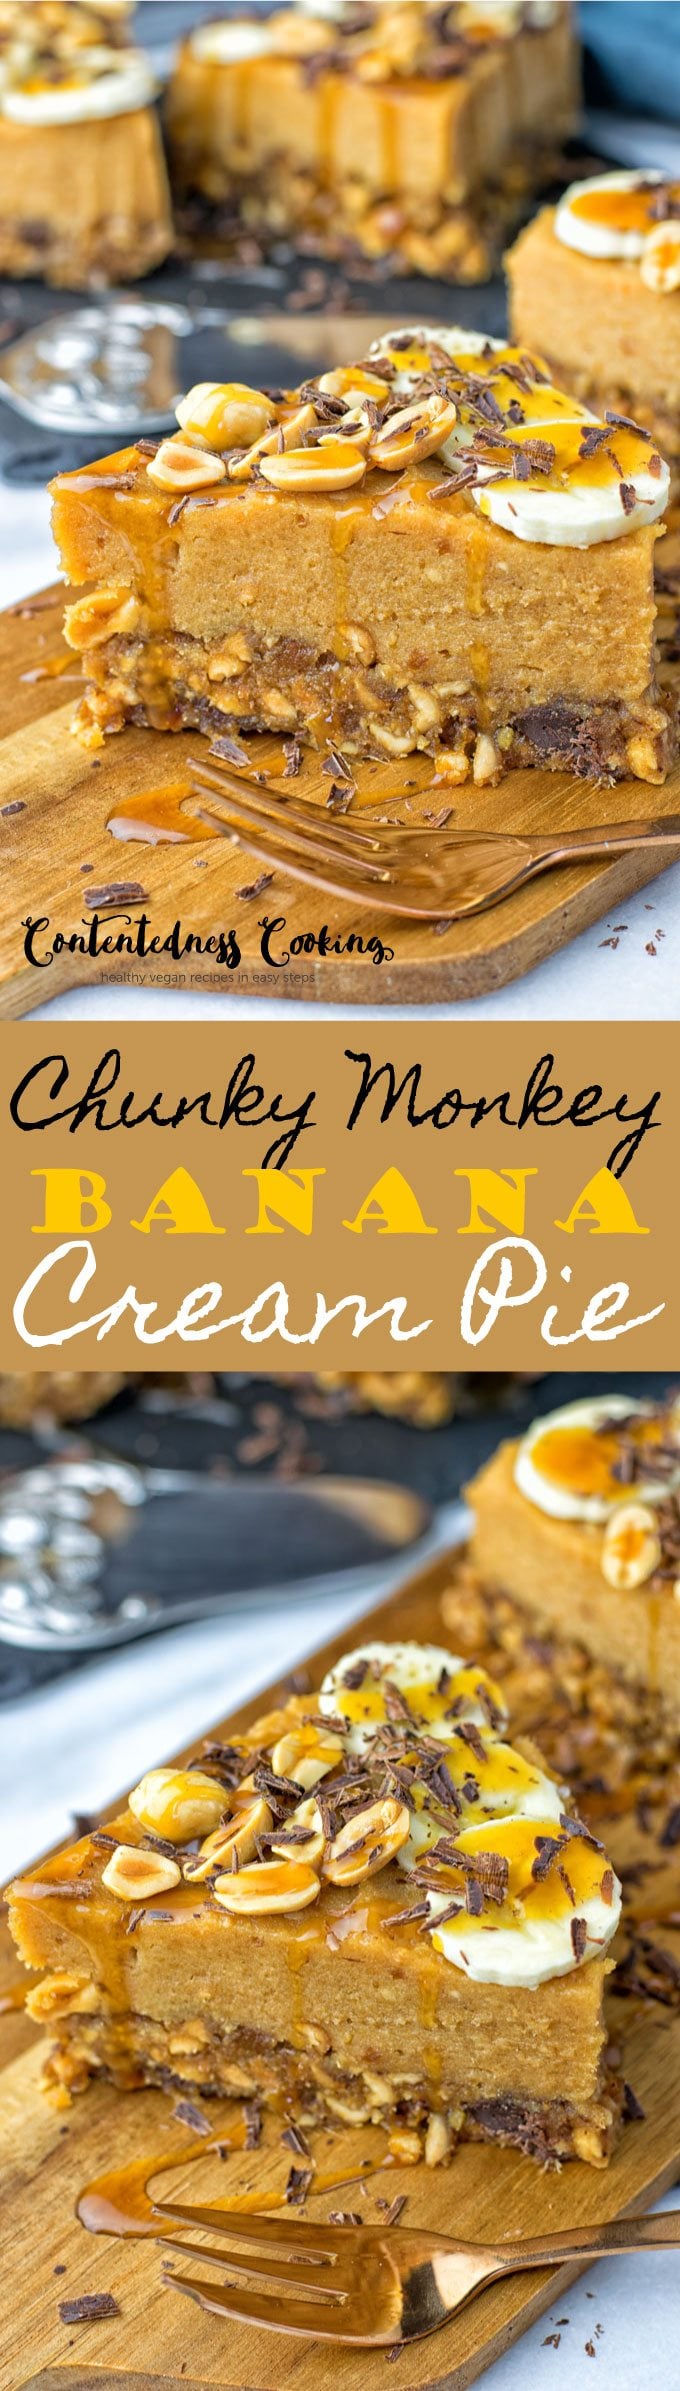 Chunky Monkey Banana Cream Pie | #vegan #glutenfree #contentednesscooking